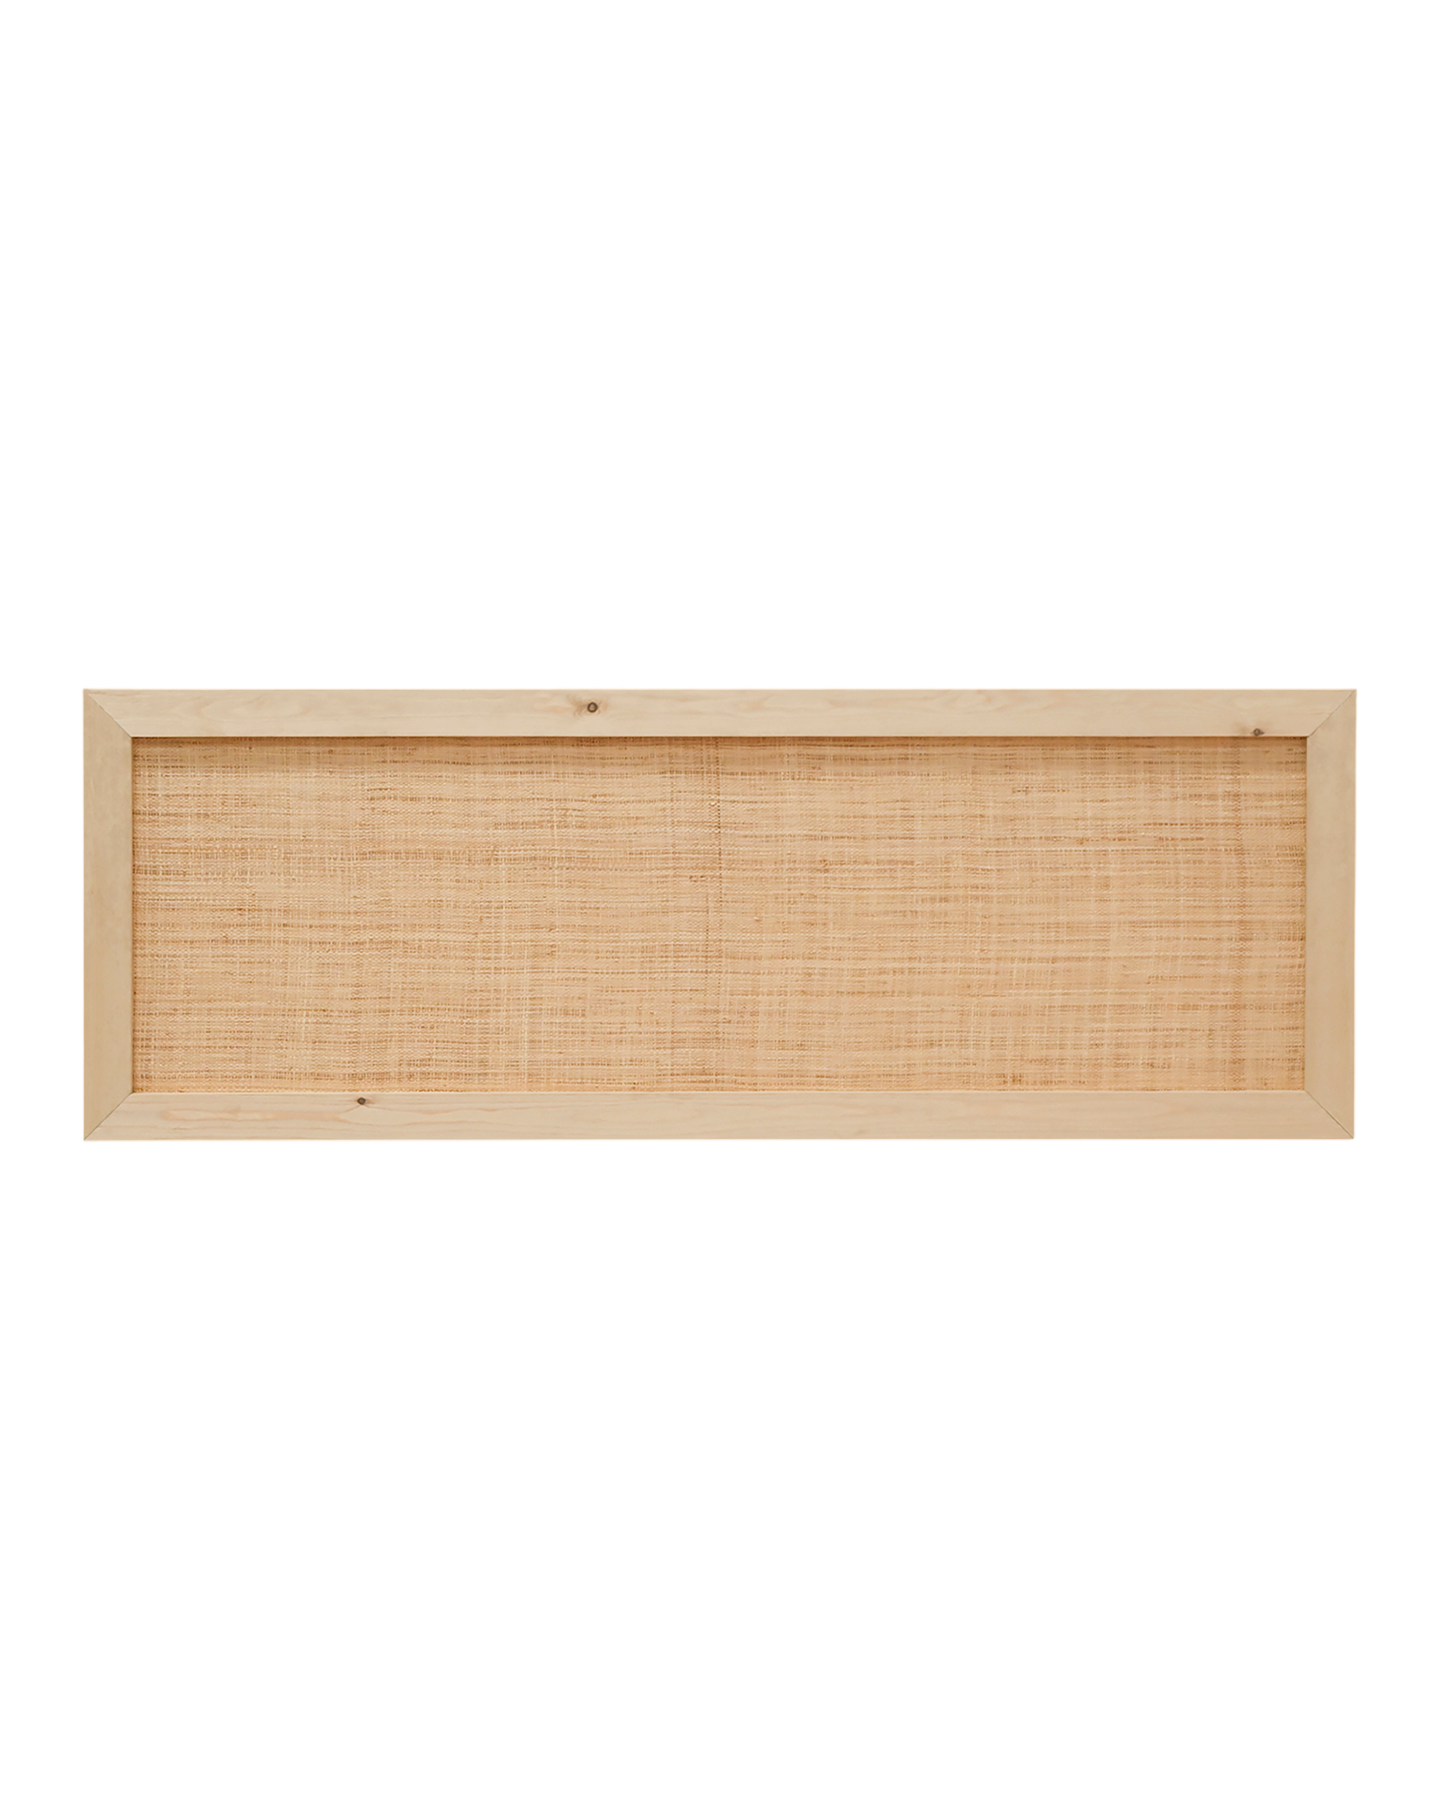 Cabecero de madera maciza y rafia en tono olivo de 180x60cm - DECOWOOD